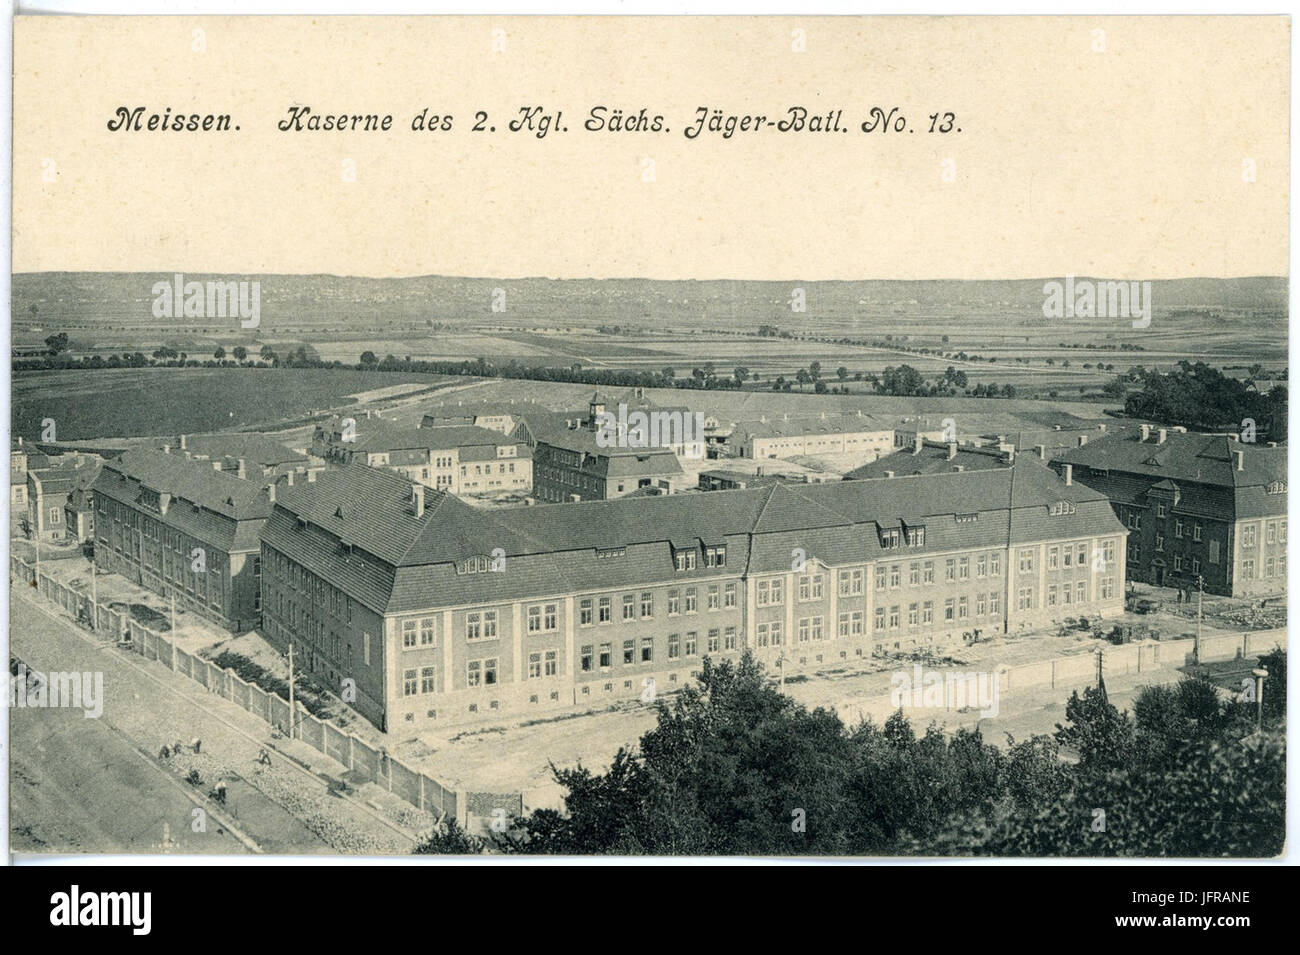 18175-Meißen-1914-Kaserne des 2. Königlich Sächsischen Jäger-Bataillon Nr. 13-Brück & Sohn Kunstverlag Stock Photo